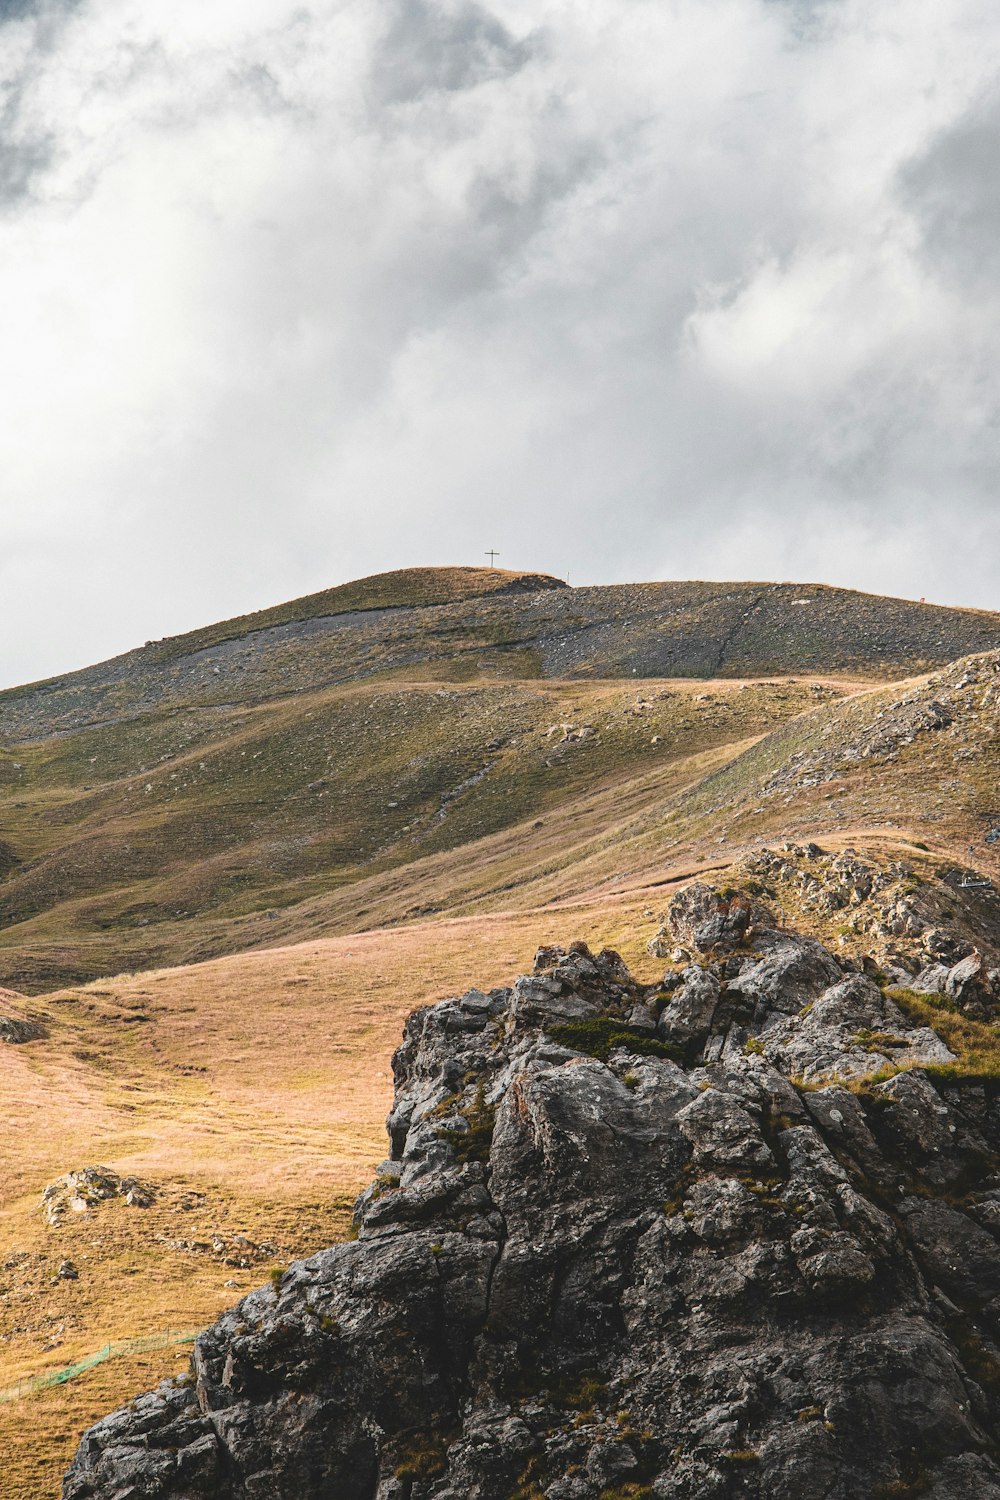 Ein einsames Schaf auf einem felsigen Hügel